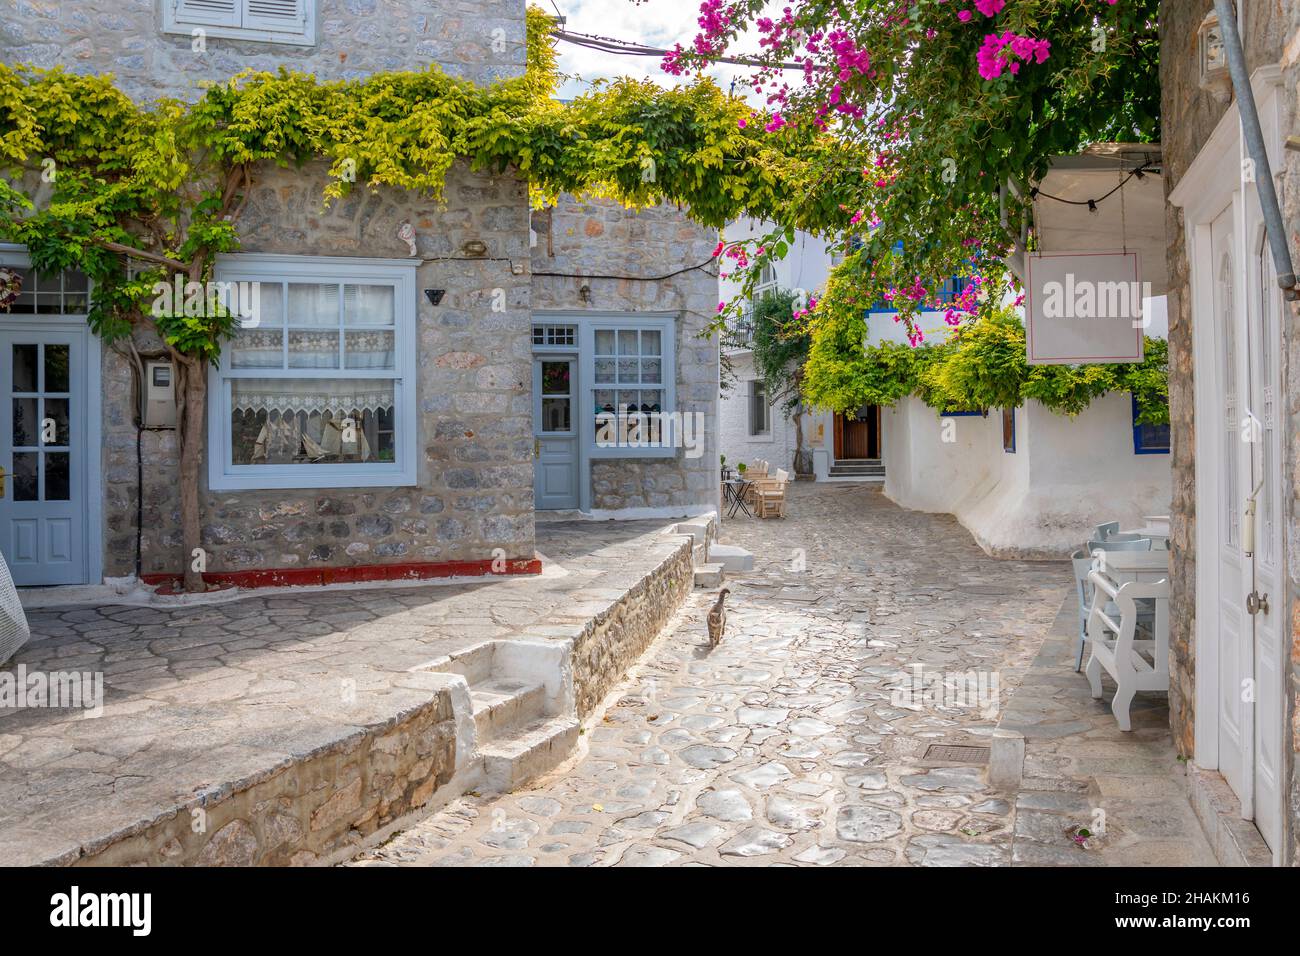 Un chat errant marche le long d'une rue pittoresque de maisons blanchies à la chaux et de boutiques dans le village de la petite île grecque d'Hydra, en Grèce. Banque D'Images